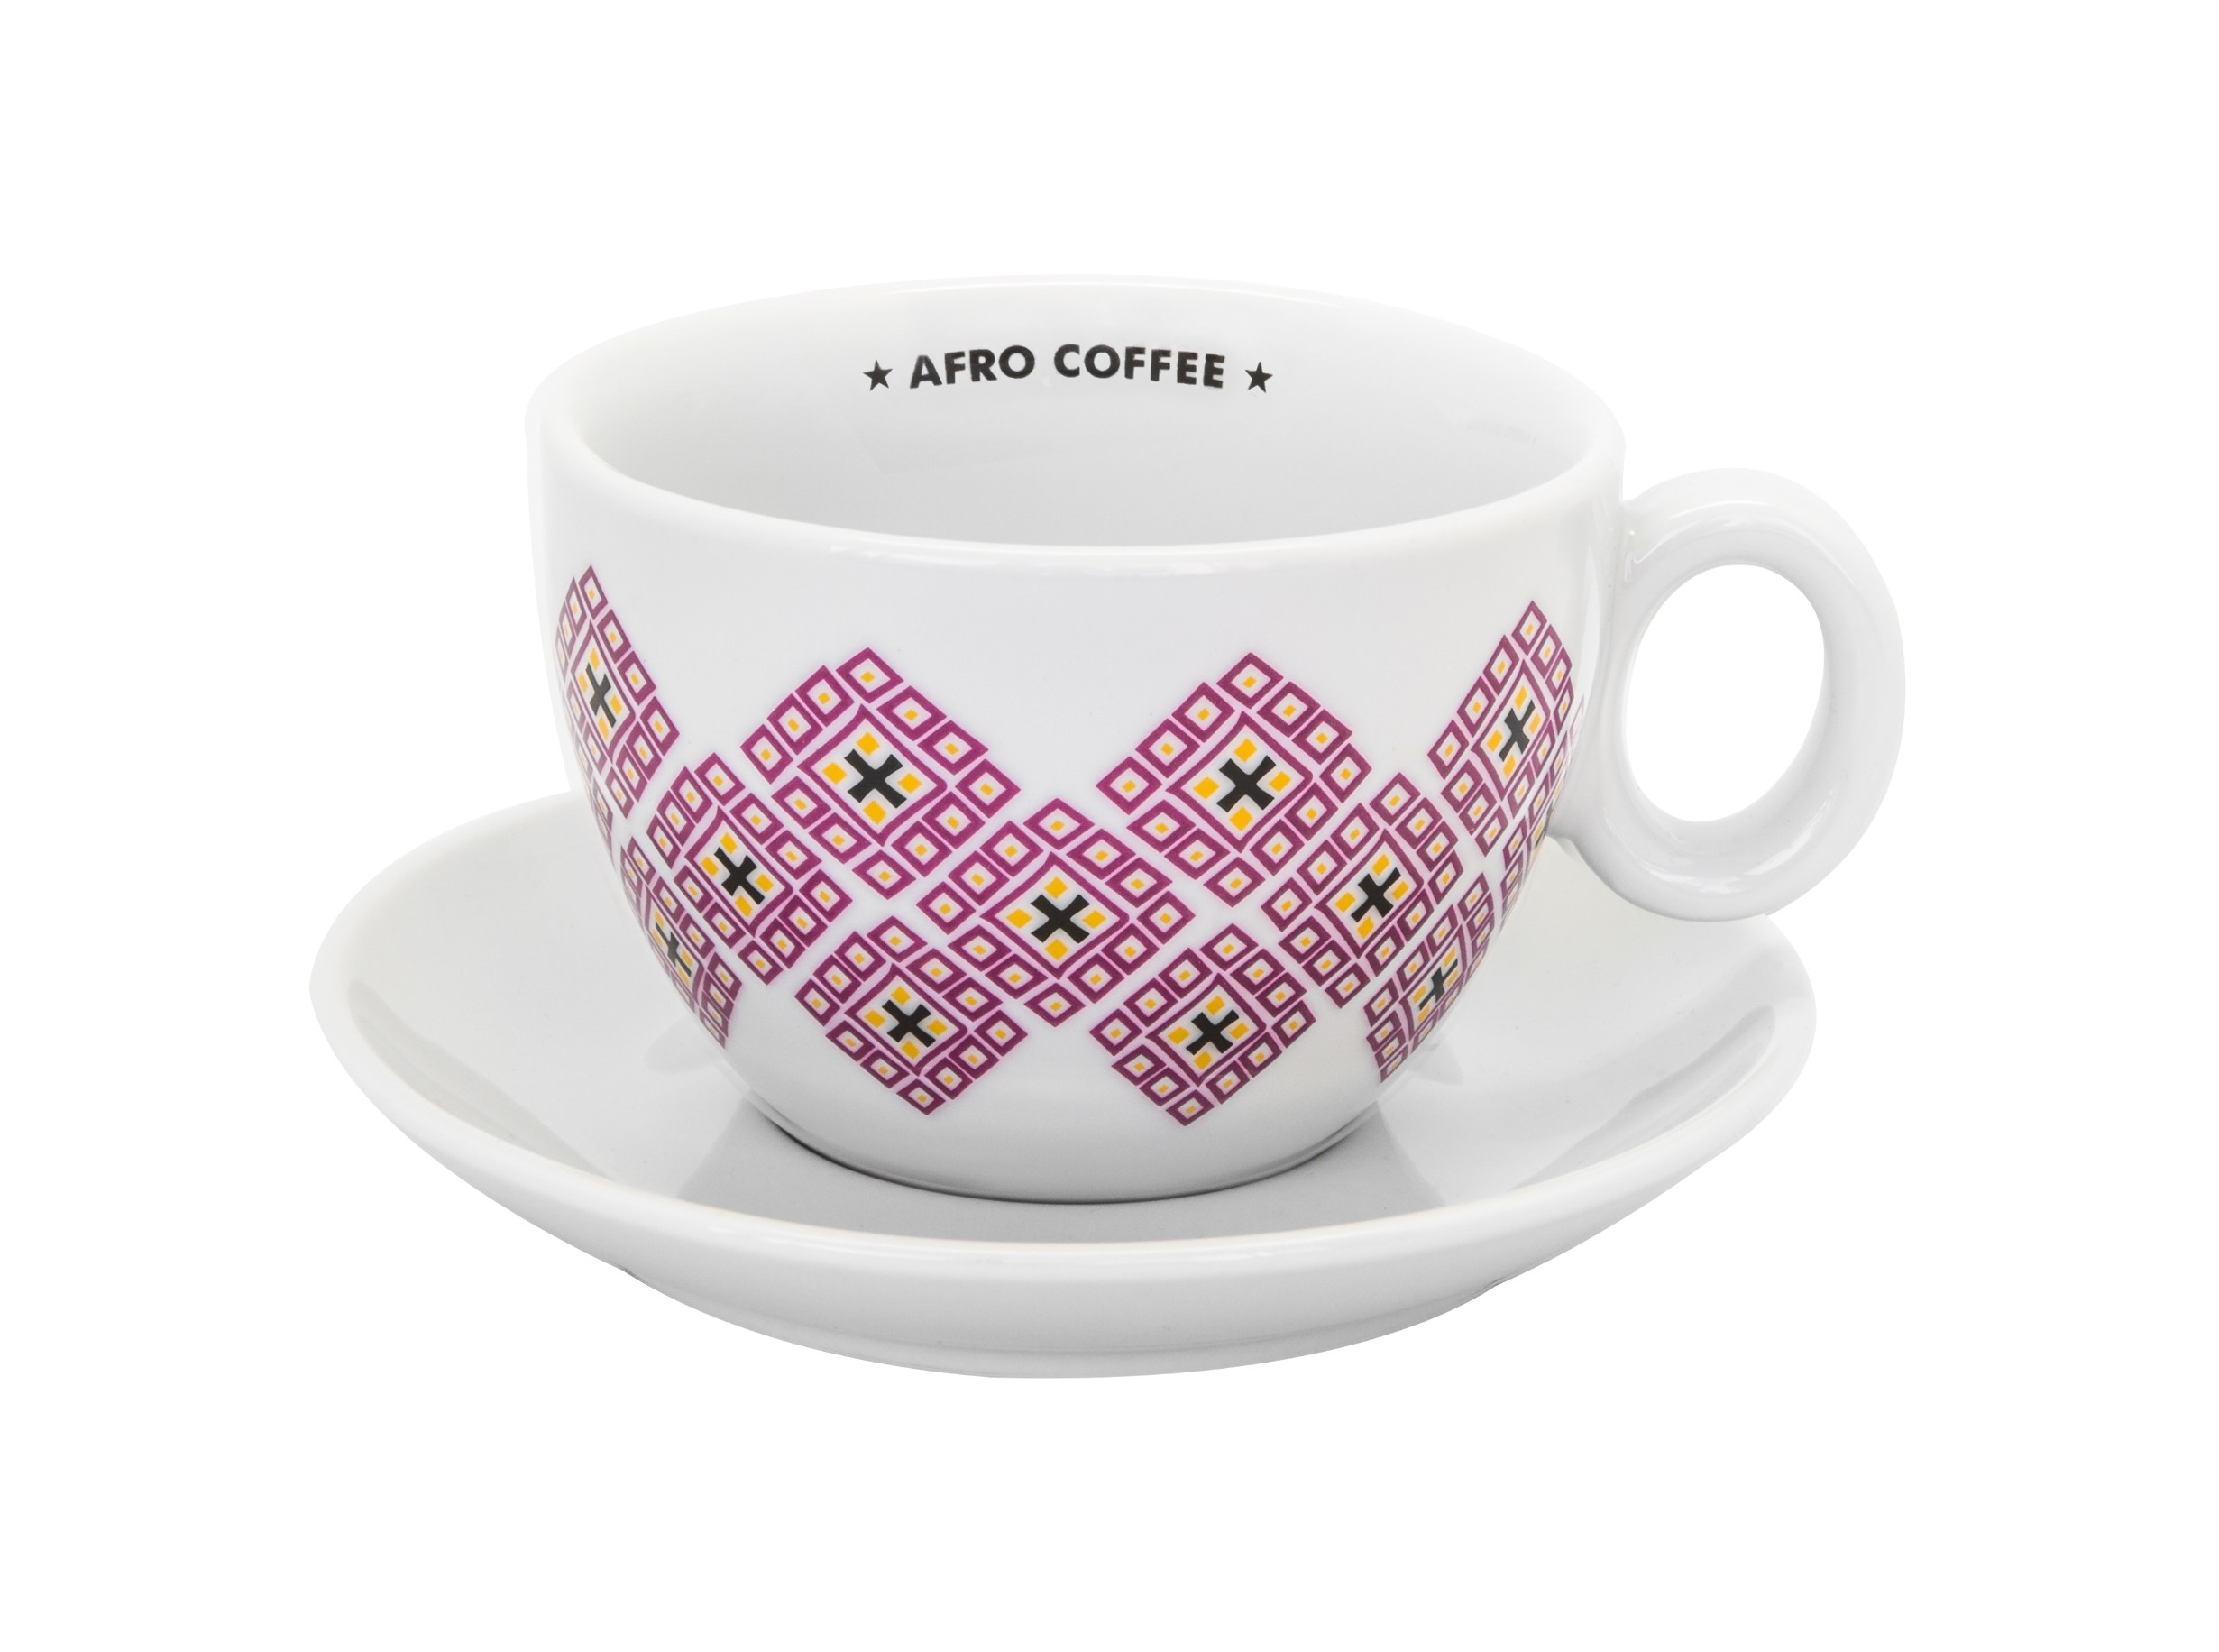 Cafe Latte Tasse – XL, 2nd edition